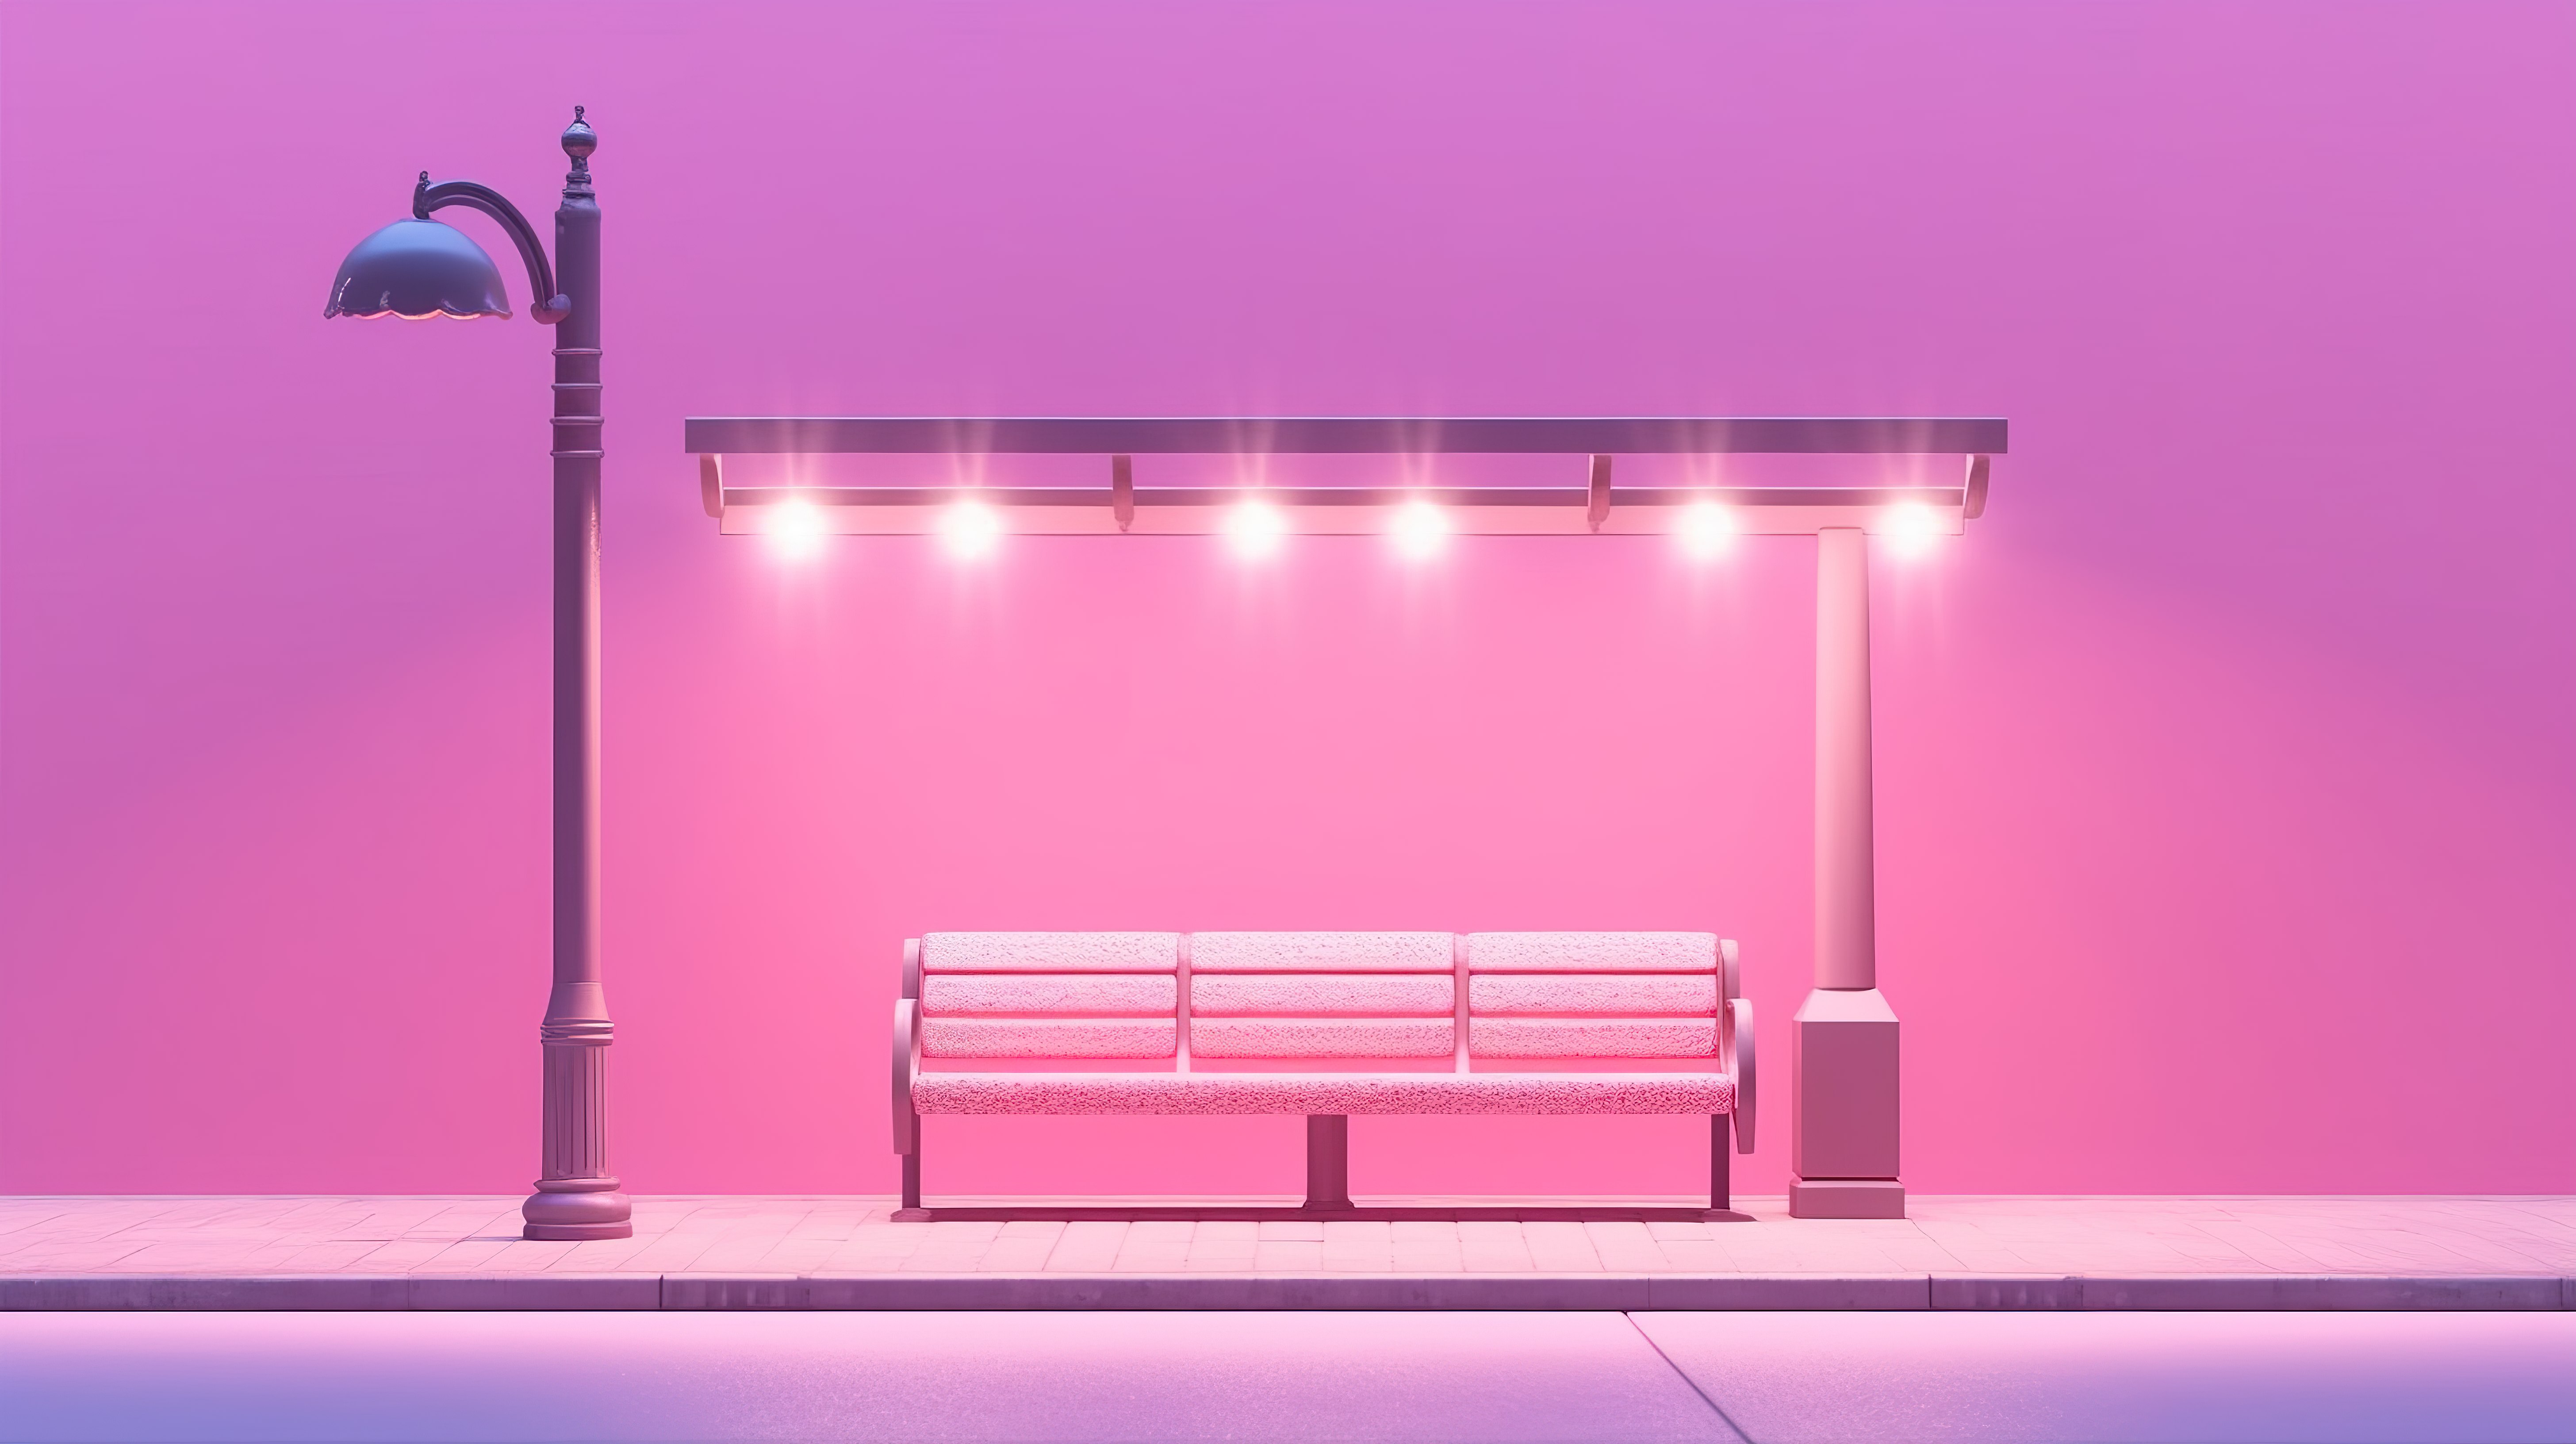 公园长椅上的路灯和城市公交车站在粉红色背景上的创意 3D 构图图片